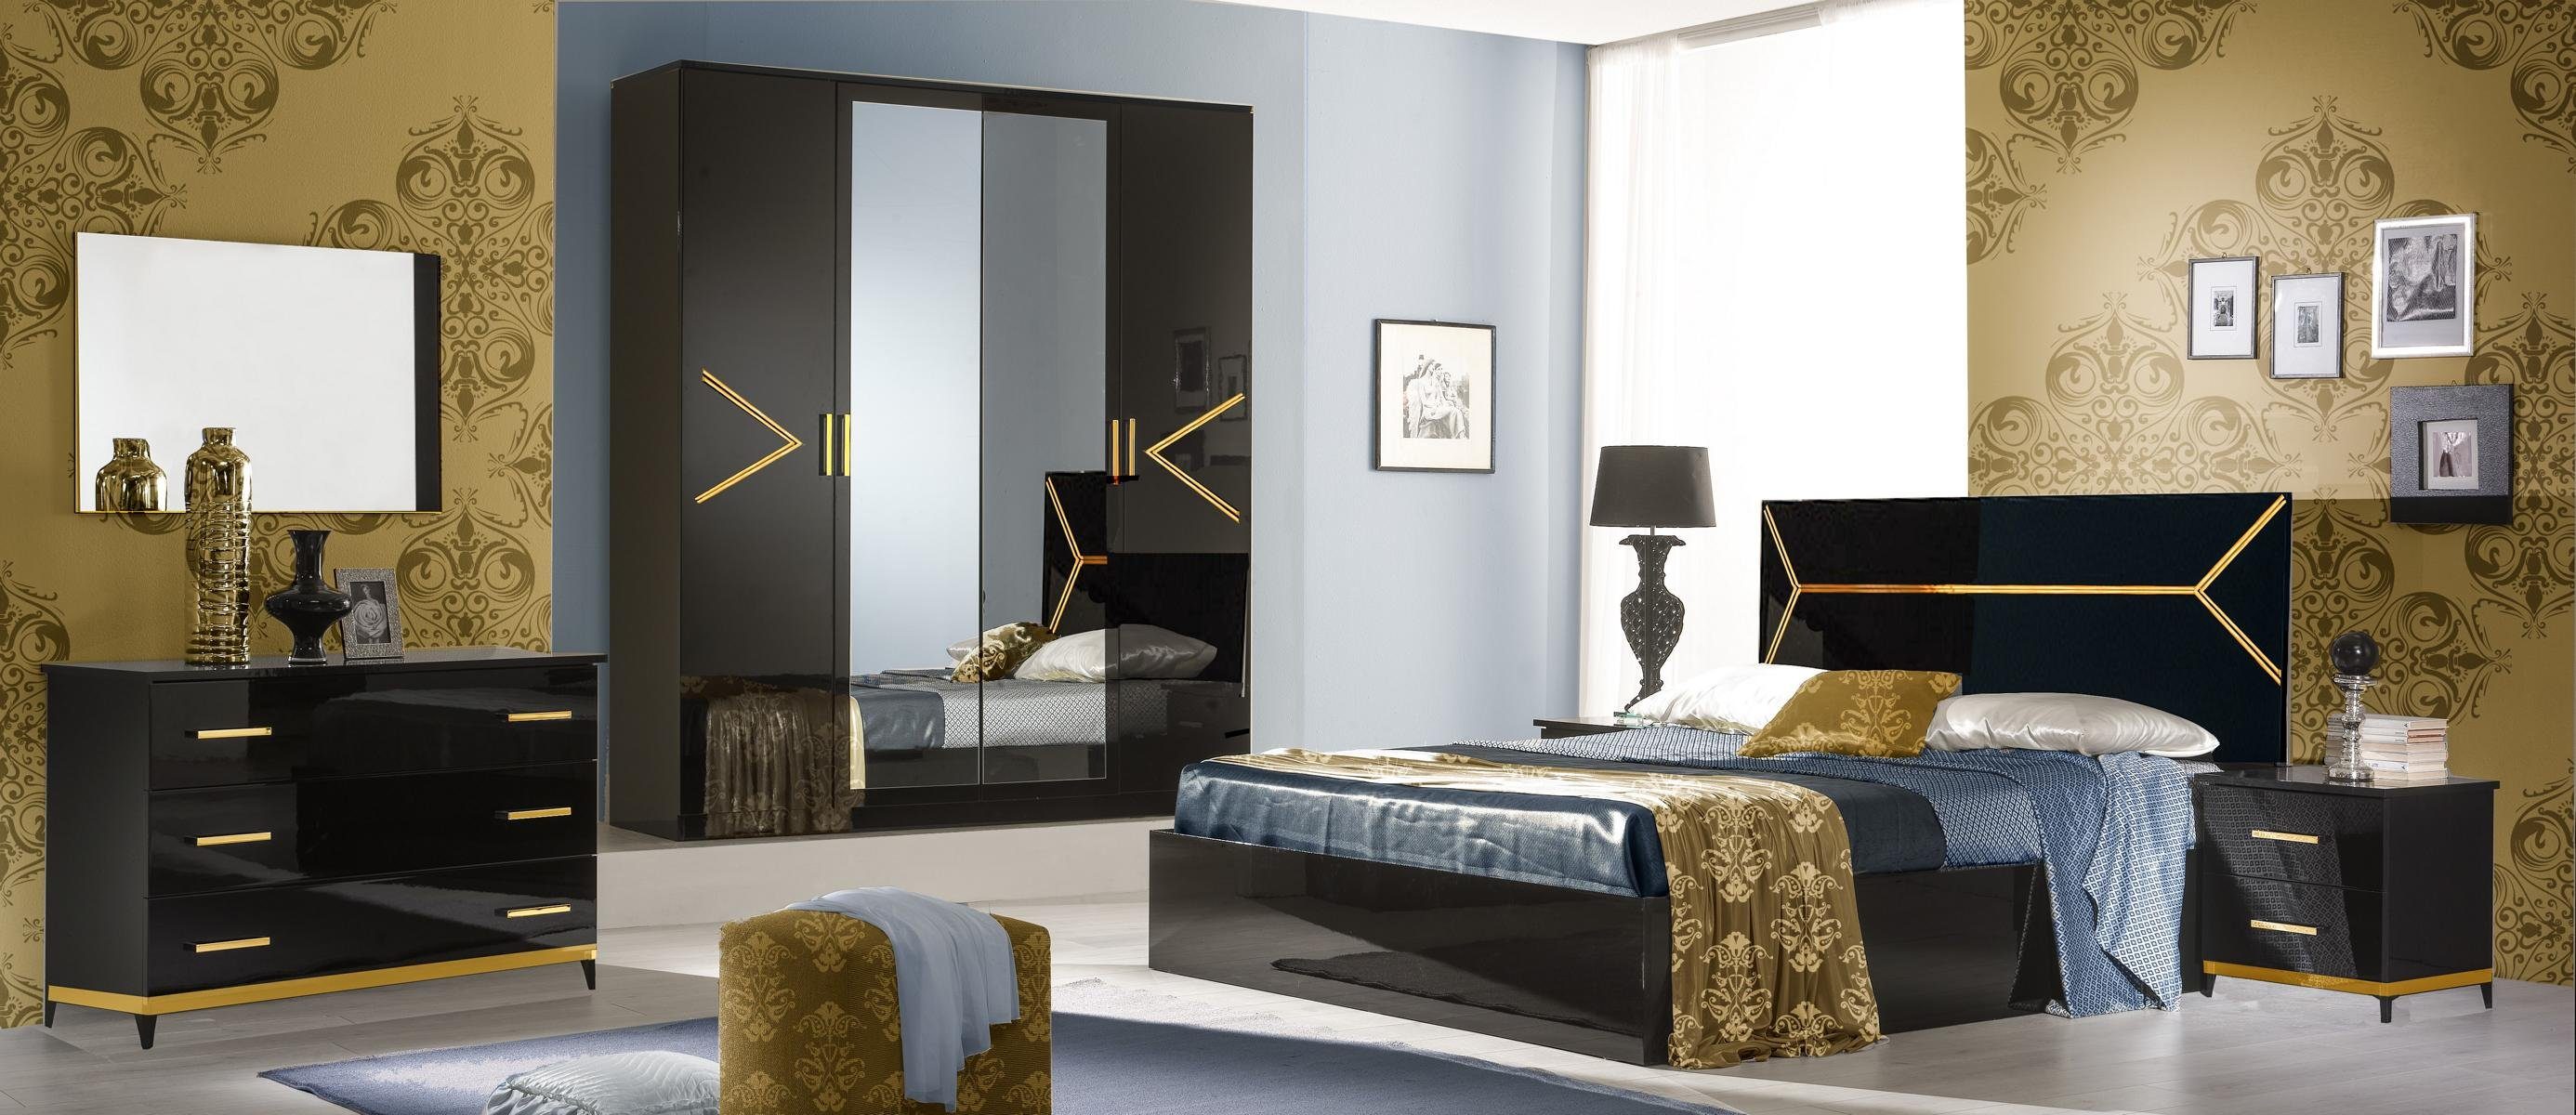 JVmoebel Schlafzimmer-Set Schlafzimmer Set Bett 6 tlg. Stil Luxus Modern Kommode Holz Garnitur